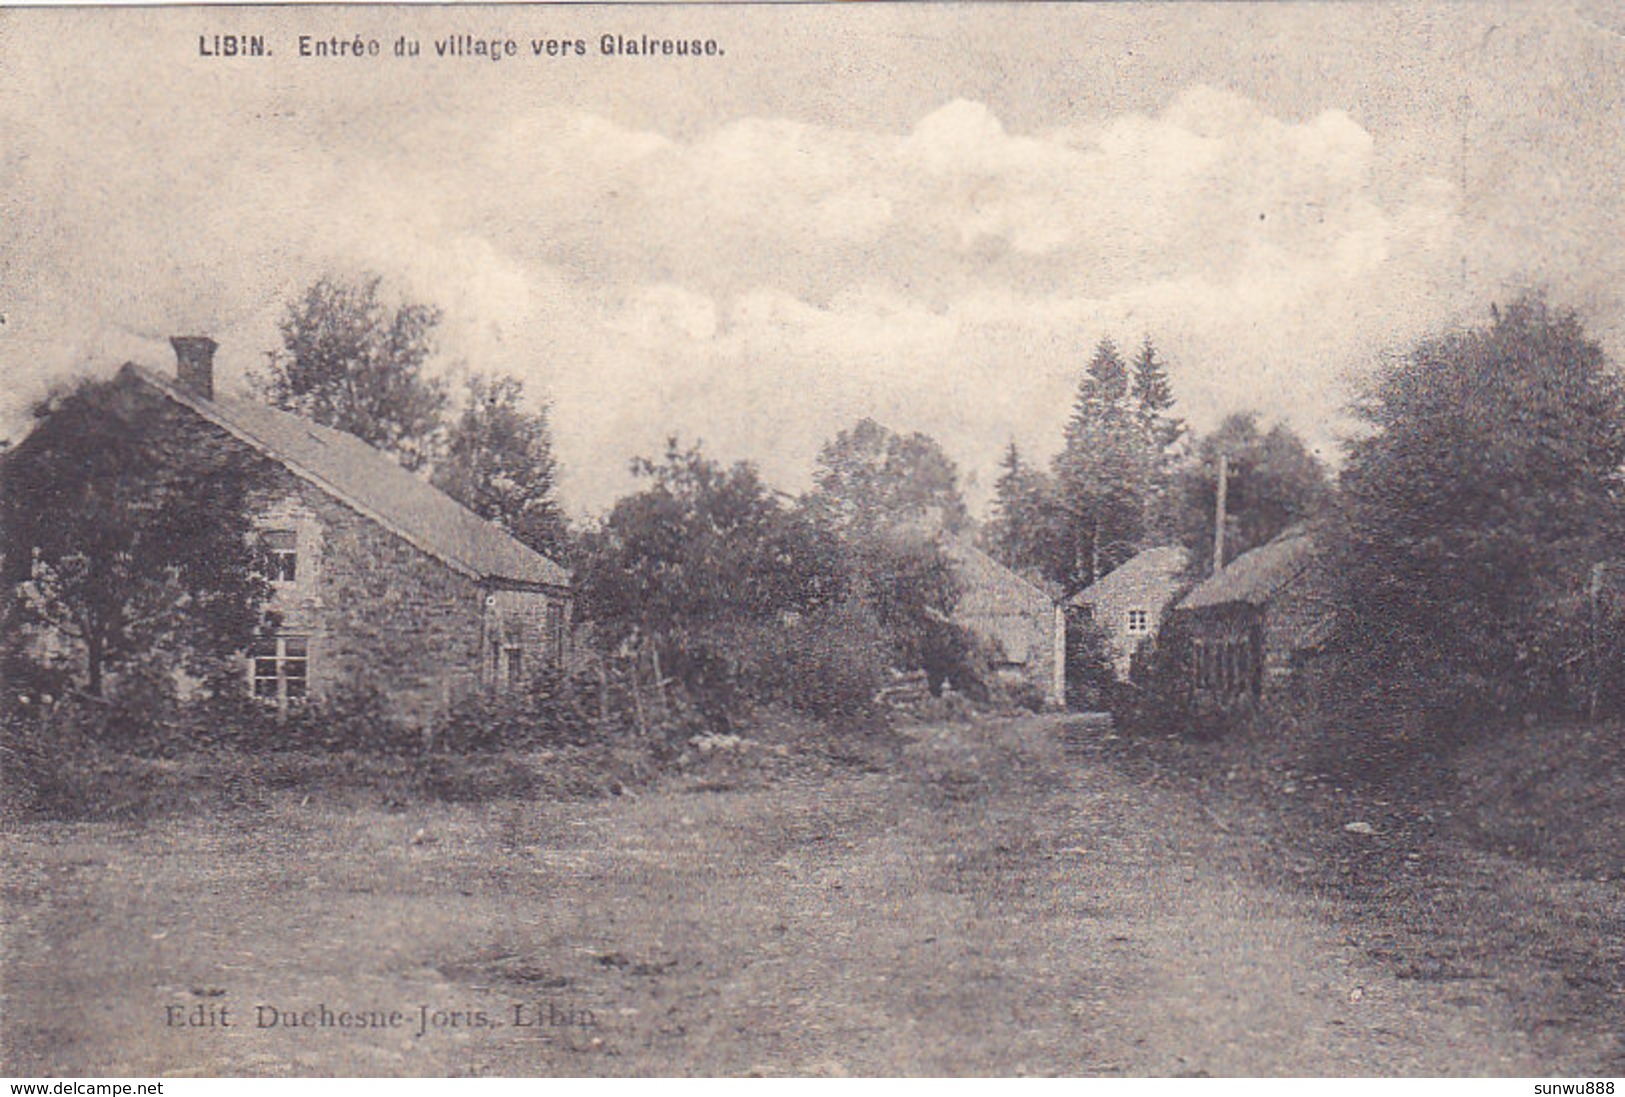 Libin - Entrée Du Village Vers Glaireuse (Edit. Duchesne-Joris, 1911) - Libin